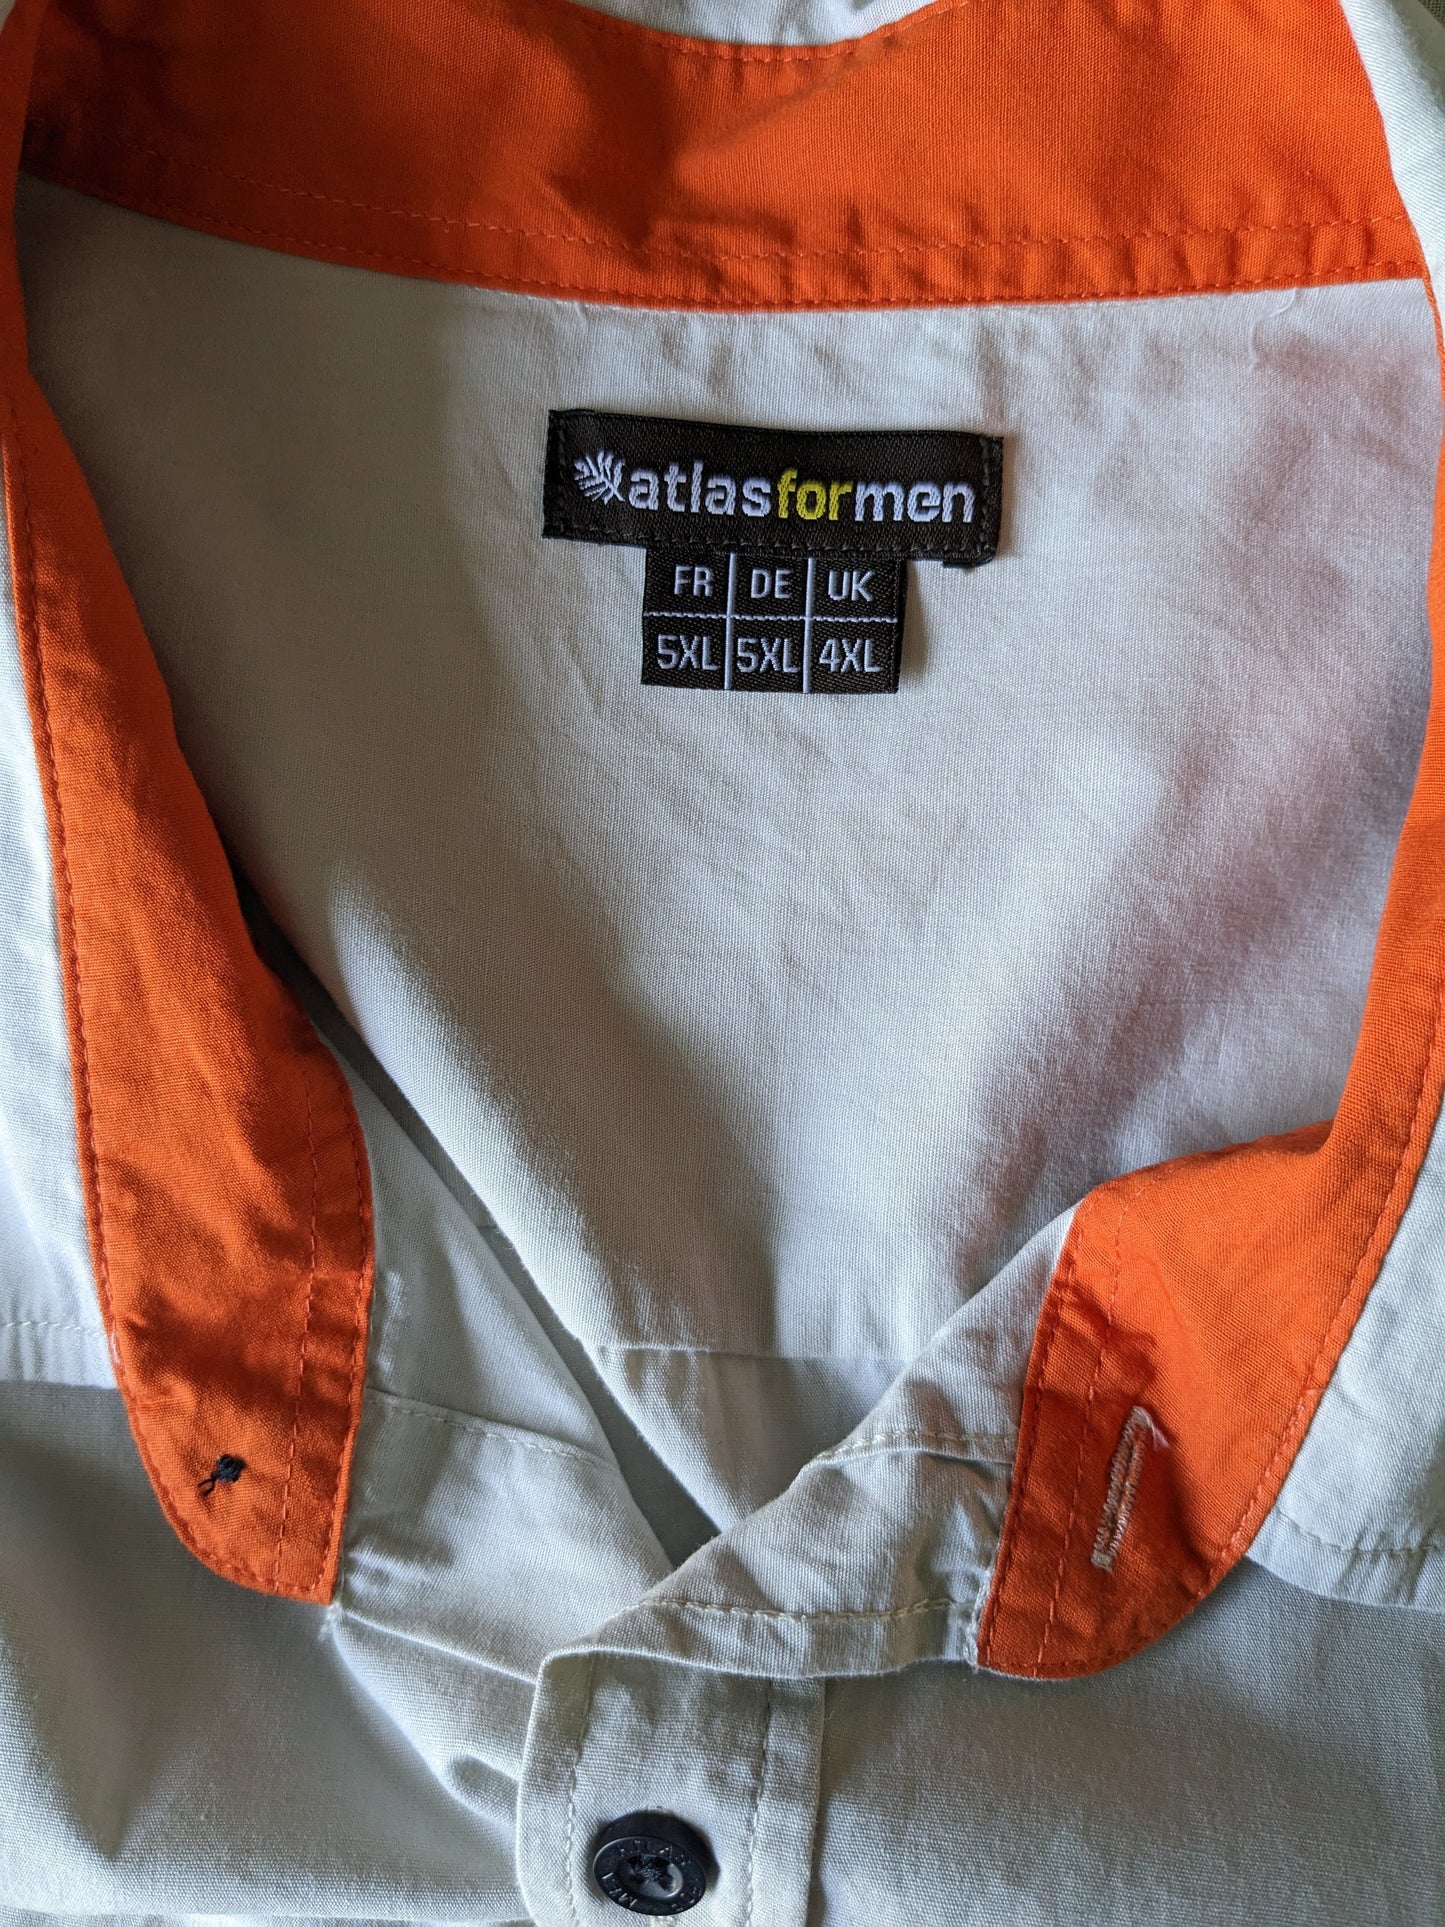 Atlas pour hommes chemises à manches courtes. Coloré beige. Accents orange. Taille 5xl / xxxxxl.